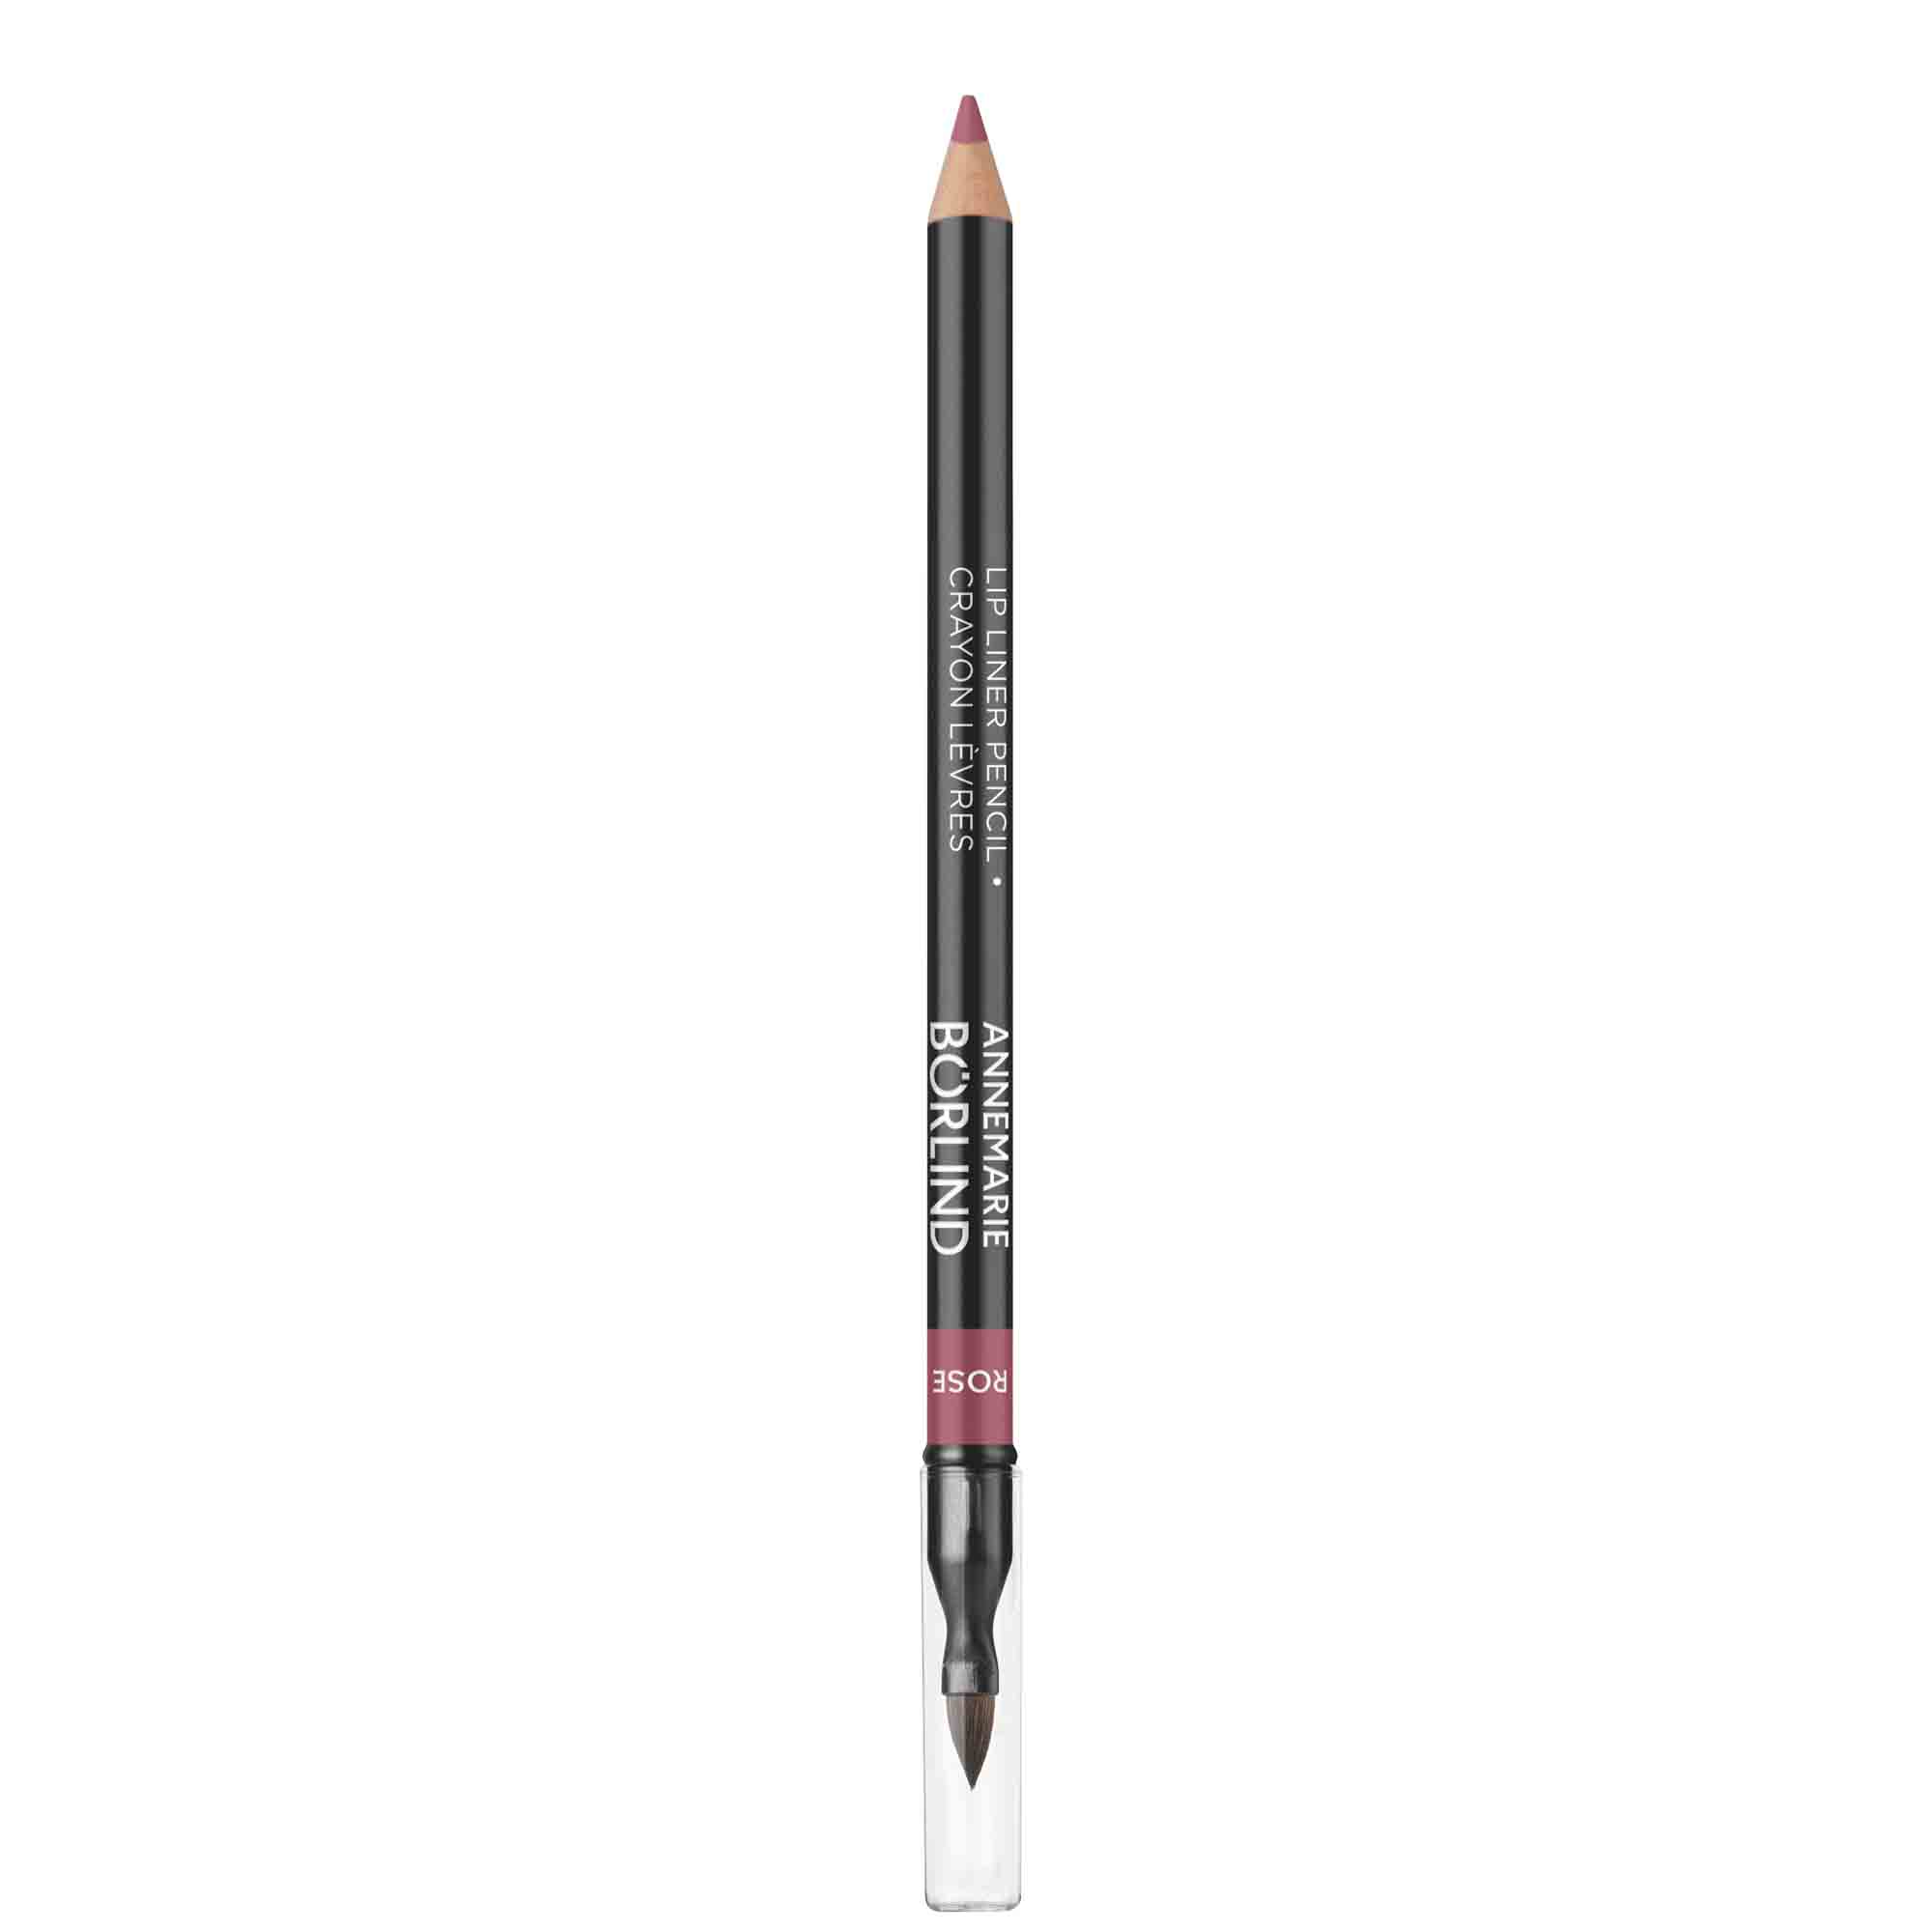 Карандаш для губ ANNEMARIE BORLIND Lip Liner Pencil контурный, с кисточкой, розовый, 1 г помада для губ annemarie borlind сочный розовый 4 г